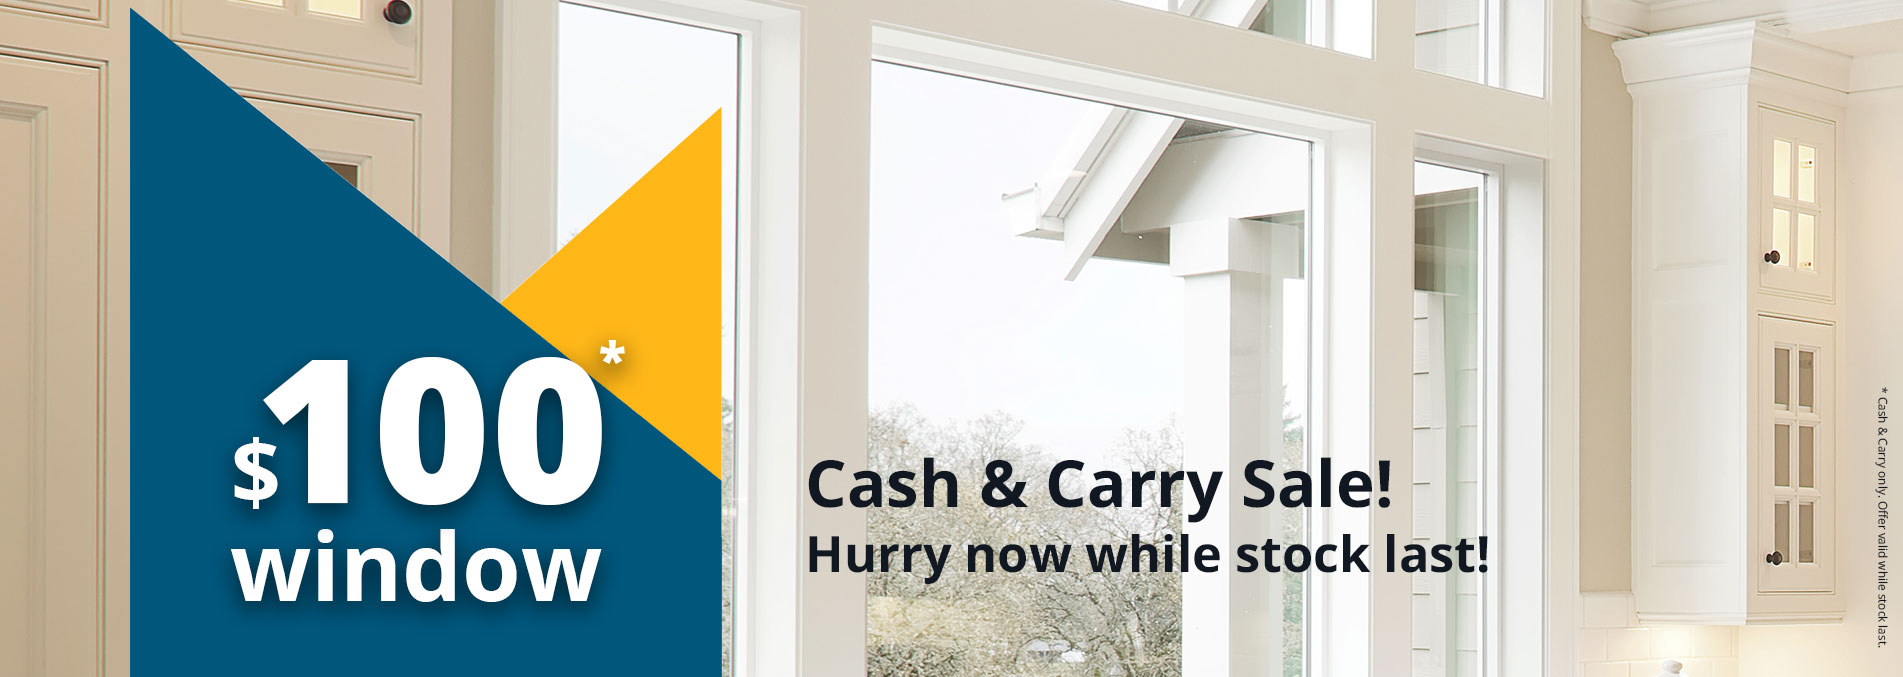 Cash & Carry Sale